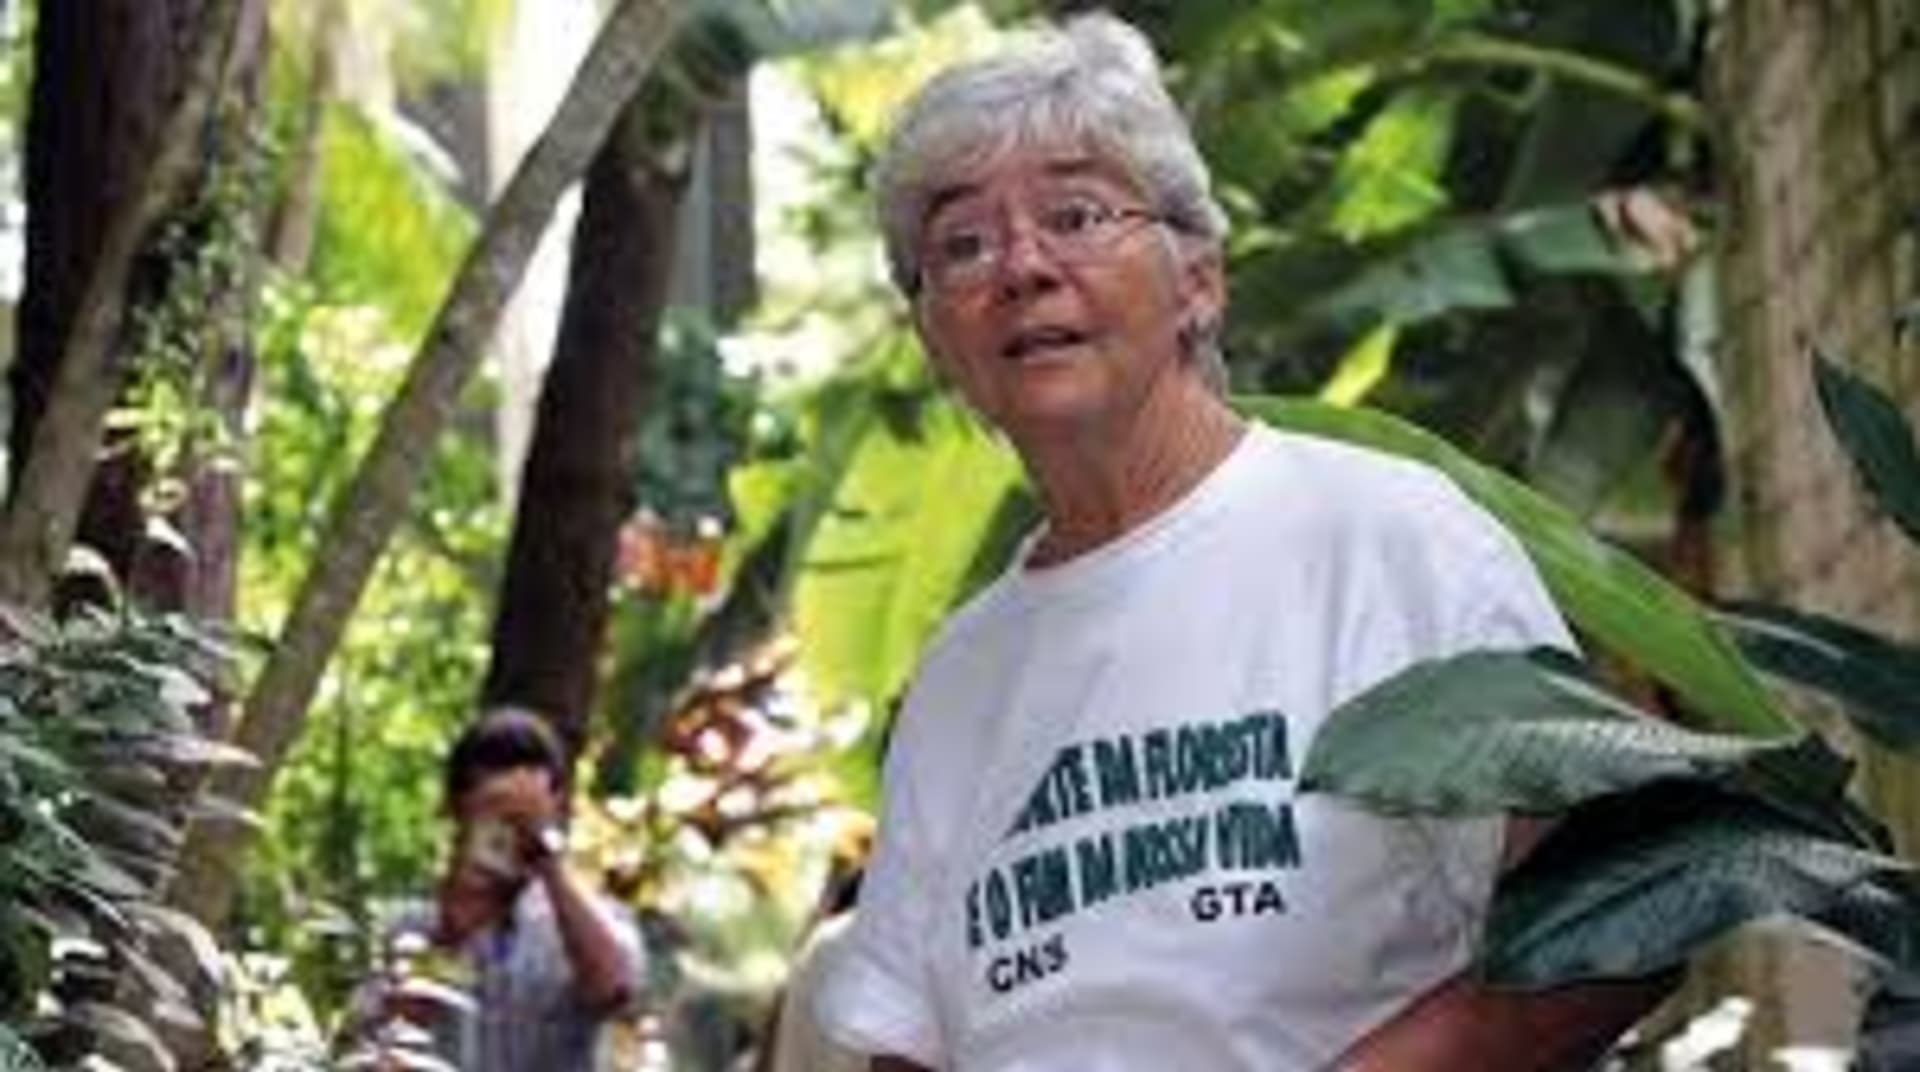 Sestra Dorothy bojovala za práva původních obyvatel na svou půdu. Stálo ji to život. Zdroj: Sinodo Amazonico